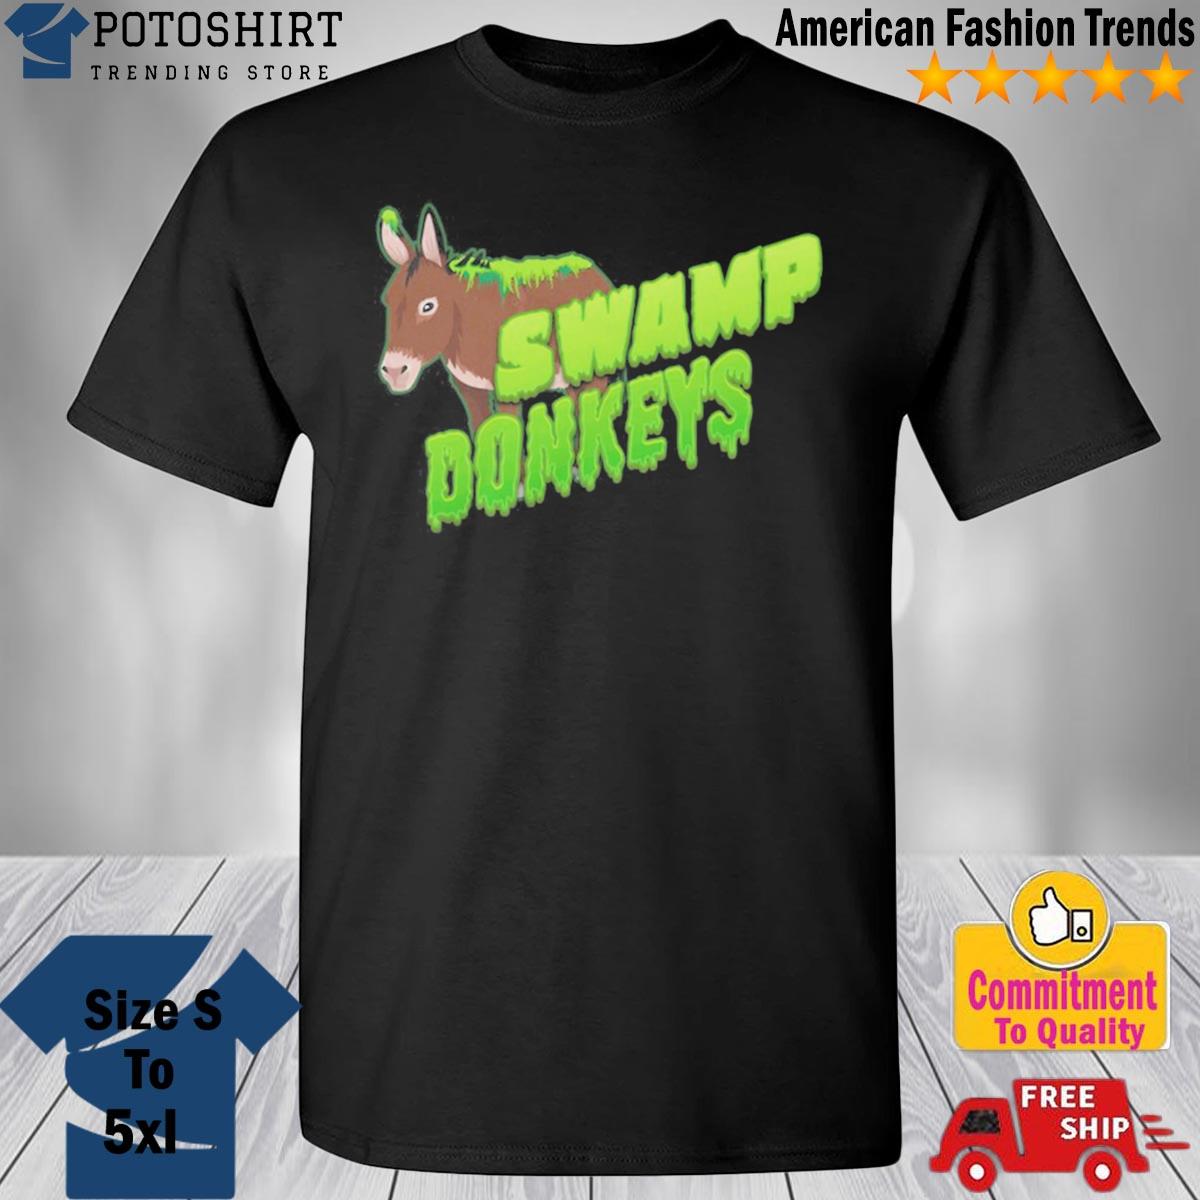 Jomboymedia Swamp Donkeys Blitzball 3 T Shirt